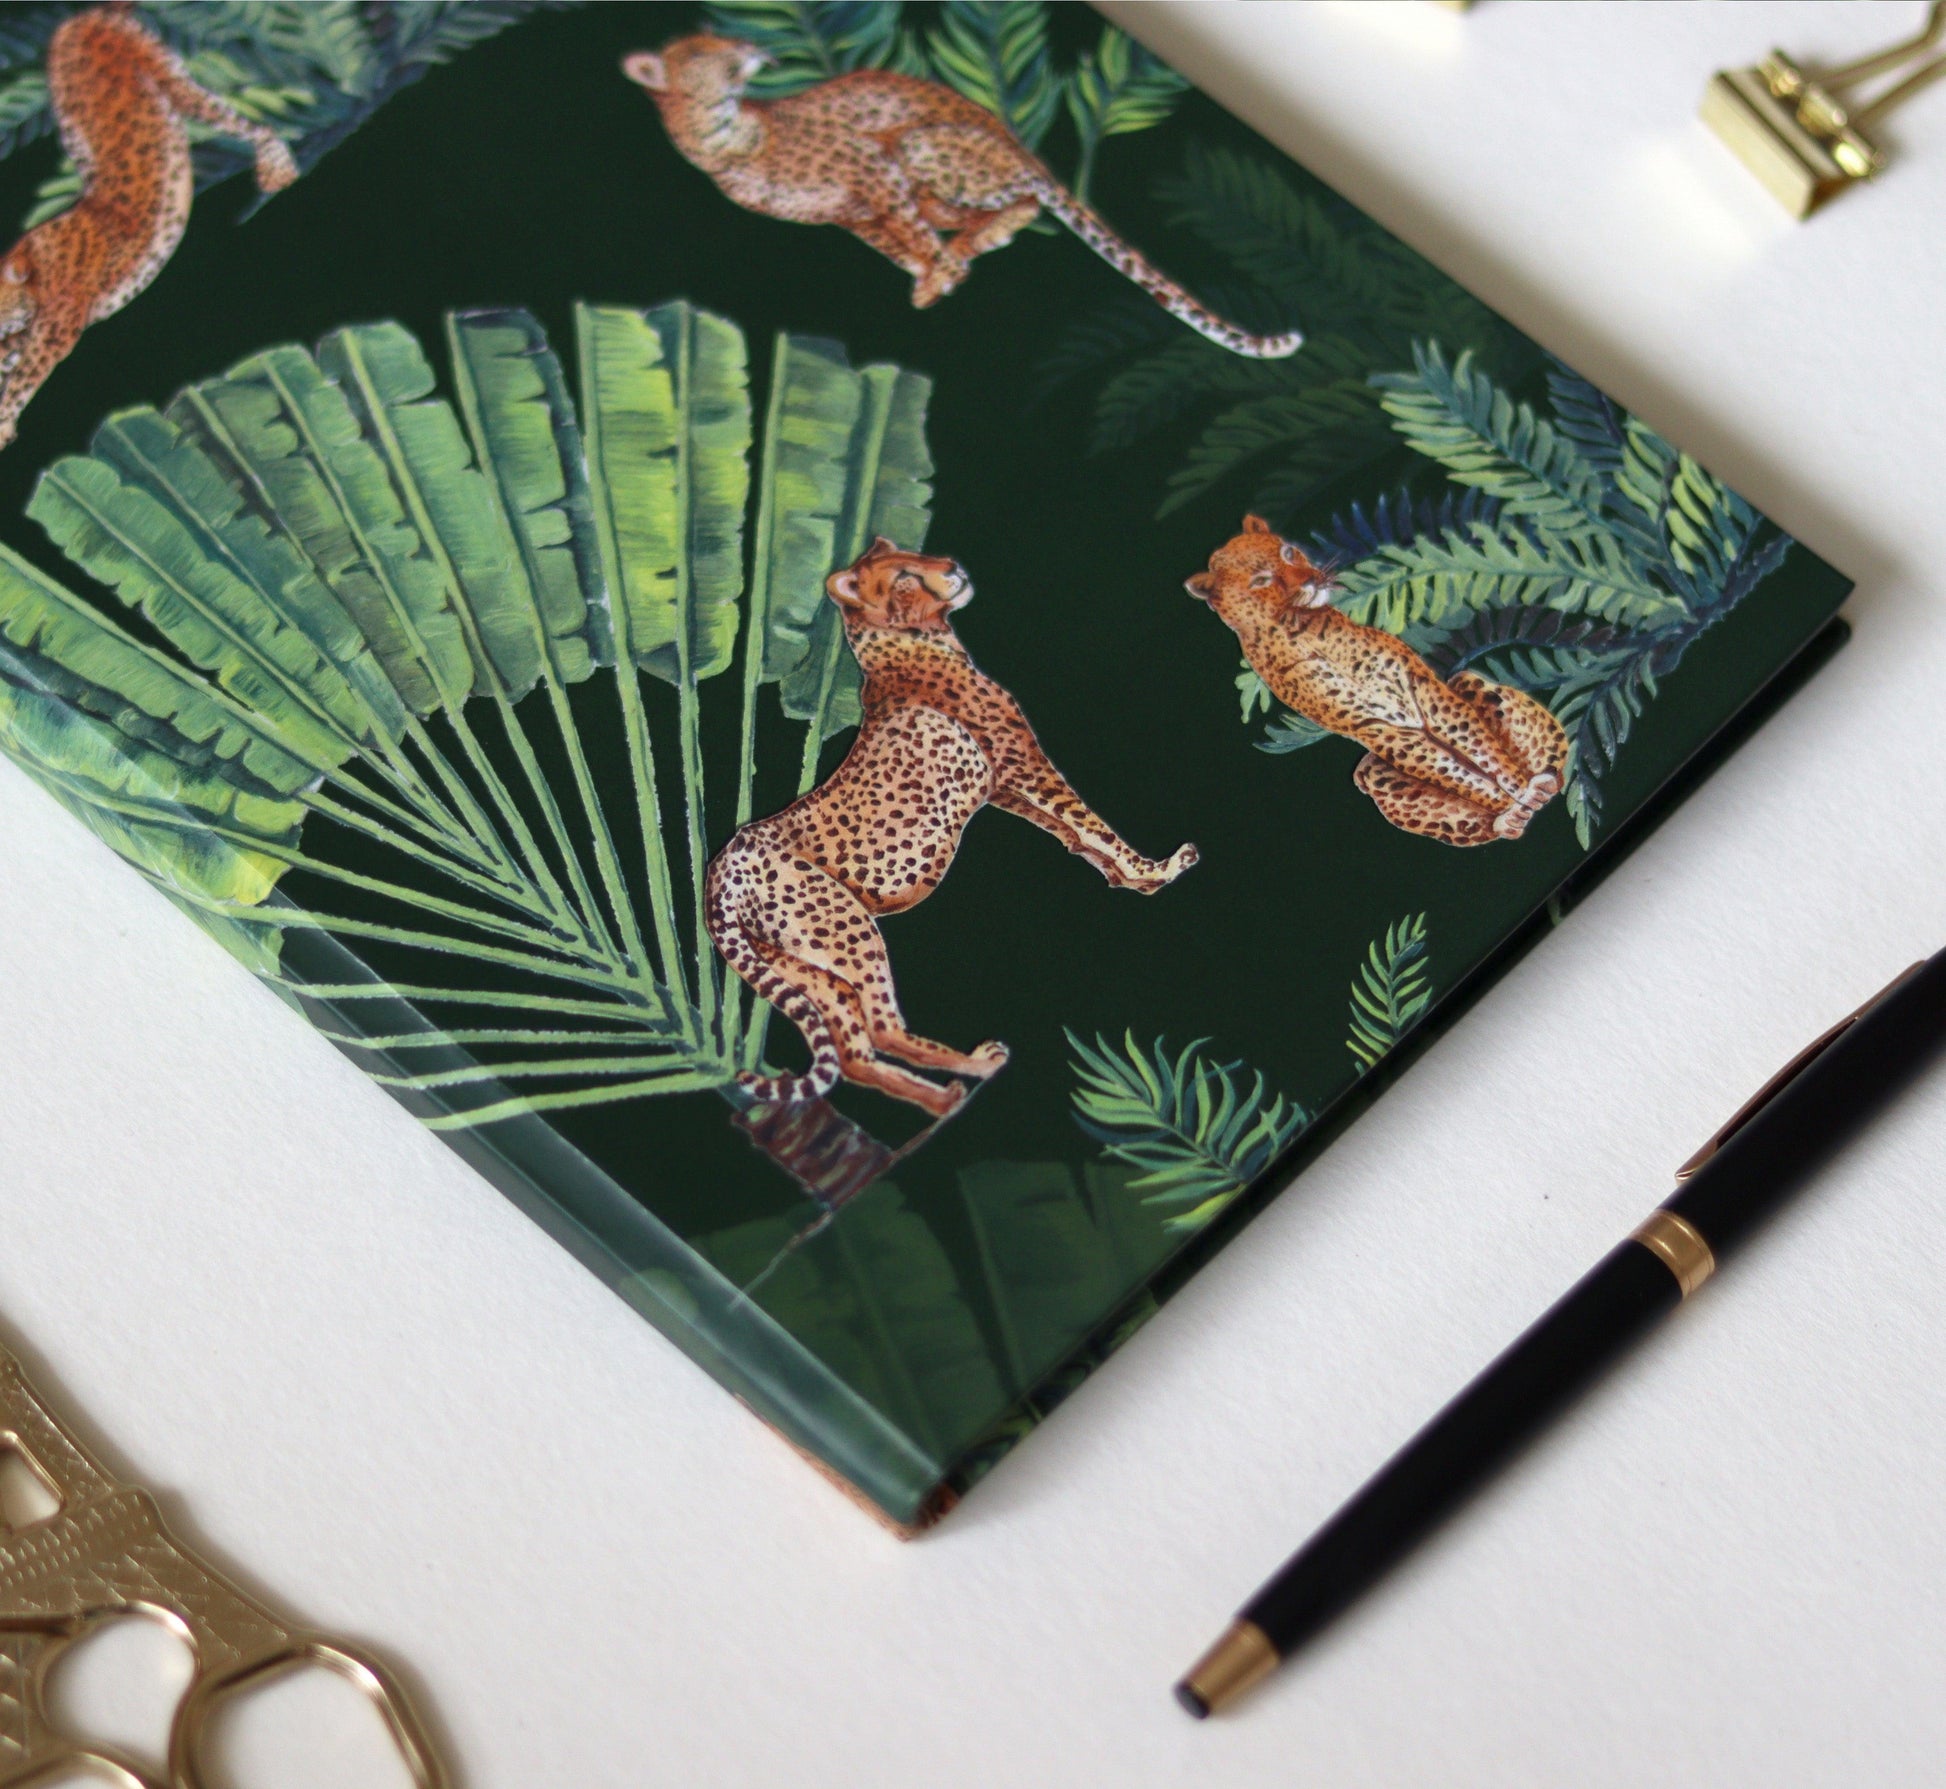 The Leopard Print Diary - Strokes by Namrata Mehta